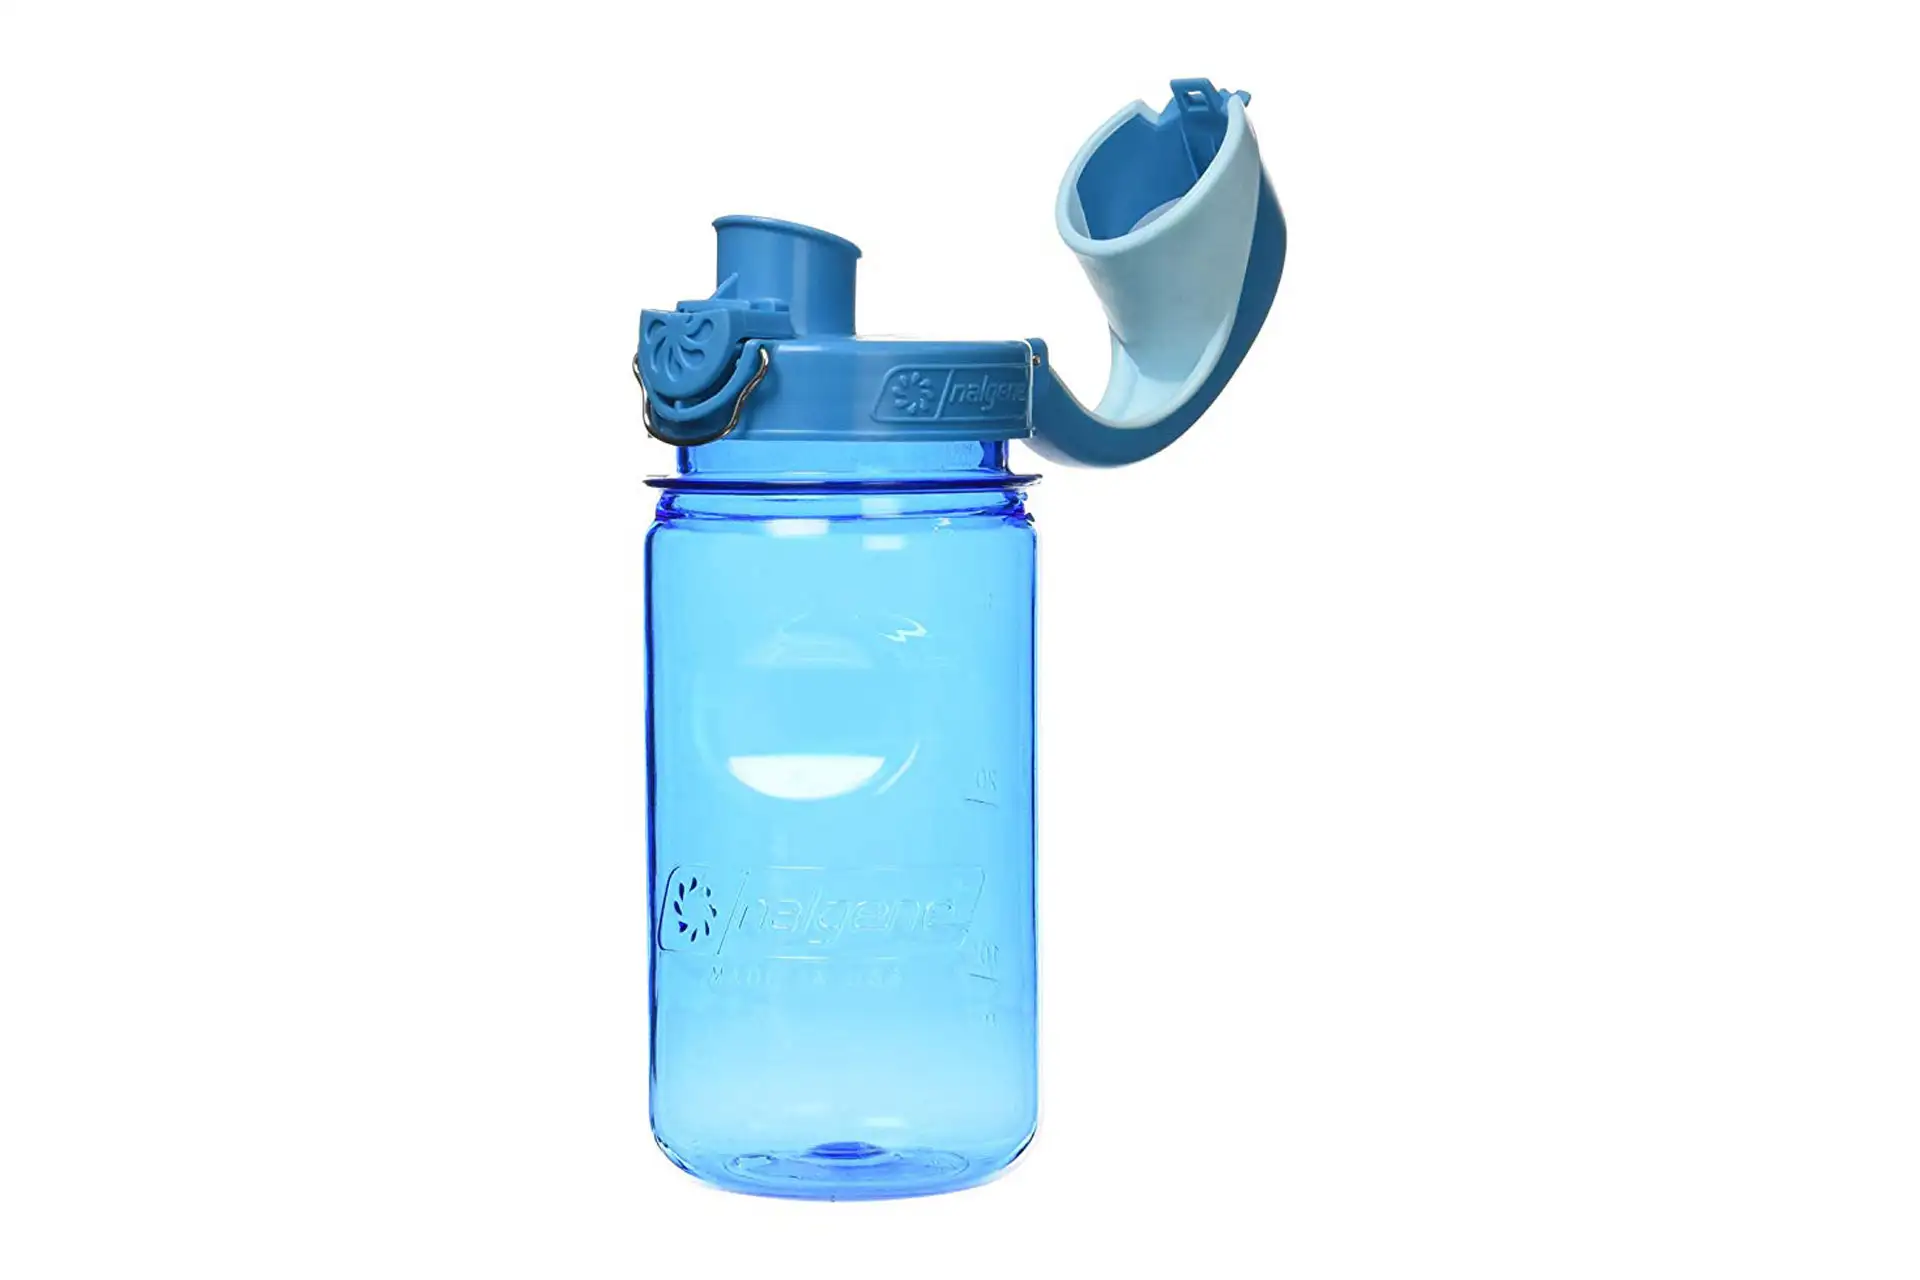 Nalgene Water Bottle; Courtesy of Amazon